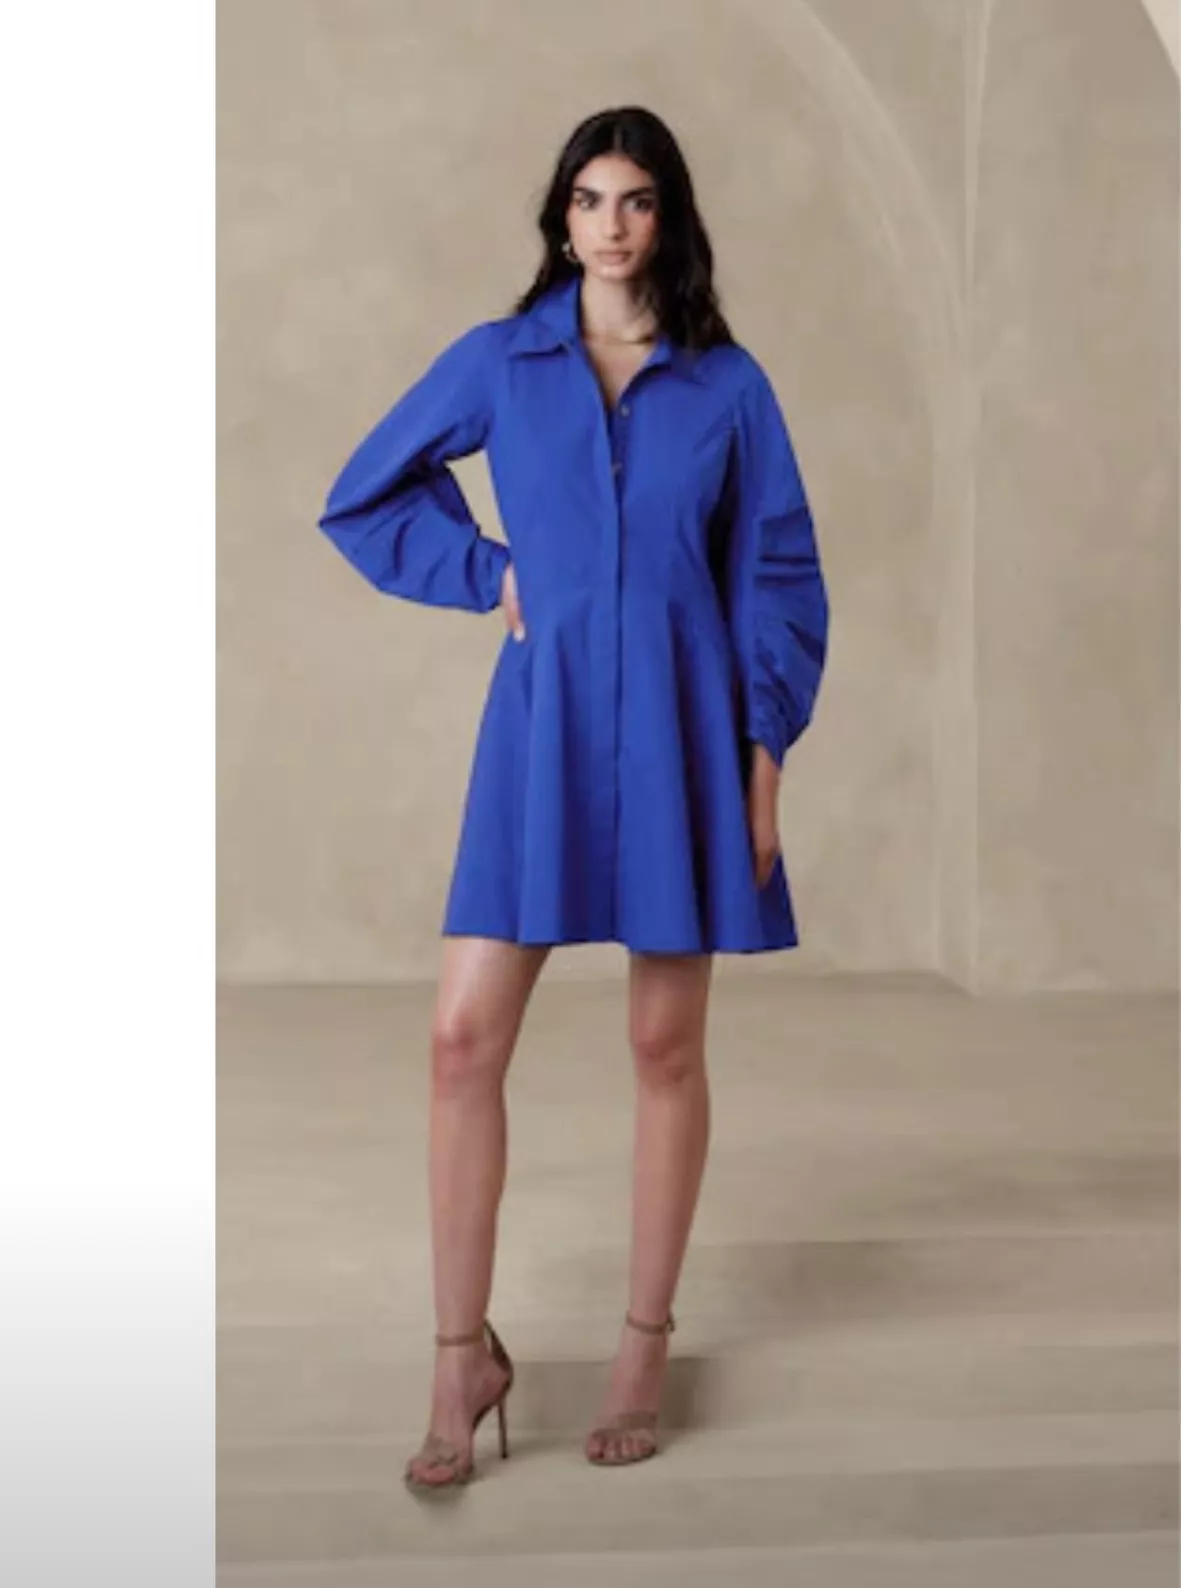 Ruffle-collar mini dress in cotton … curated on LTK